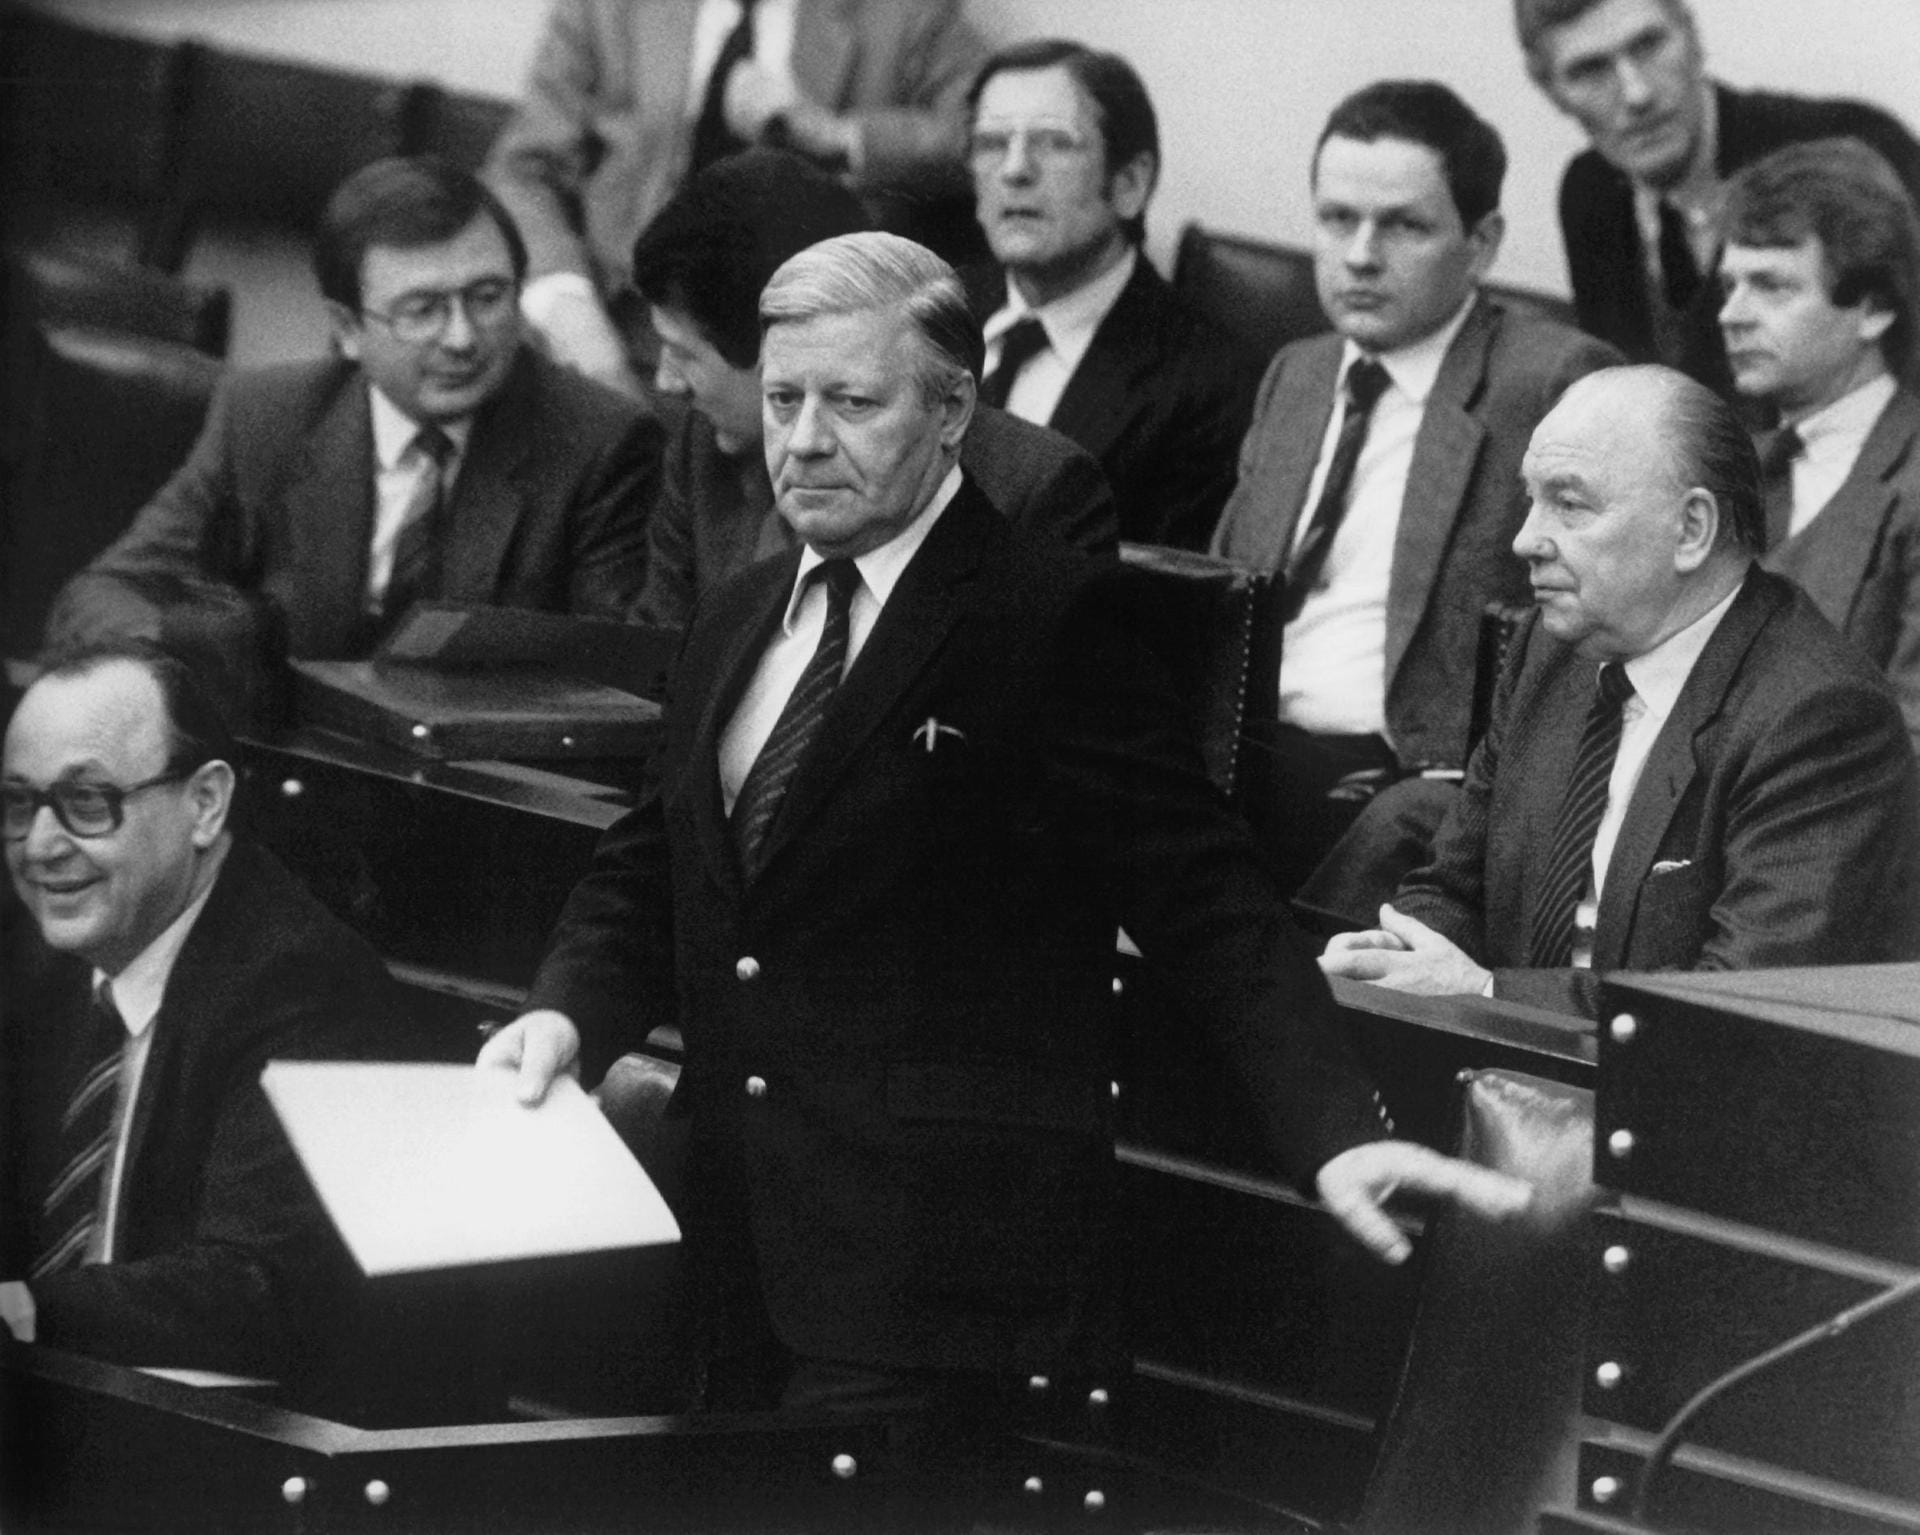 Am 1. Oktober 1982 wurde Kanzler Helmut Schmidt (SPD) per Misstrauensvotum gestürzt und durch Helmut Kohl (CDU) ersetzt. Links neben Schmidt sitzt Hans-Dietrich Genscher.